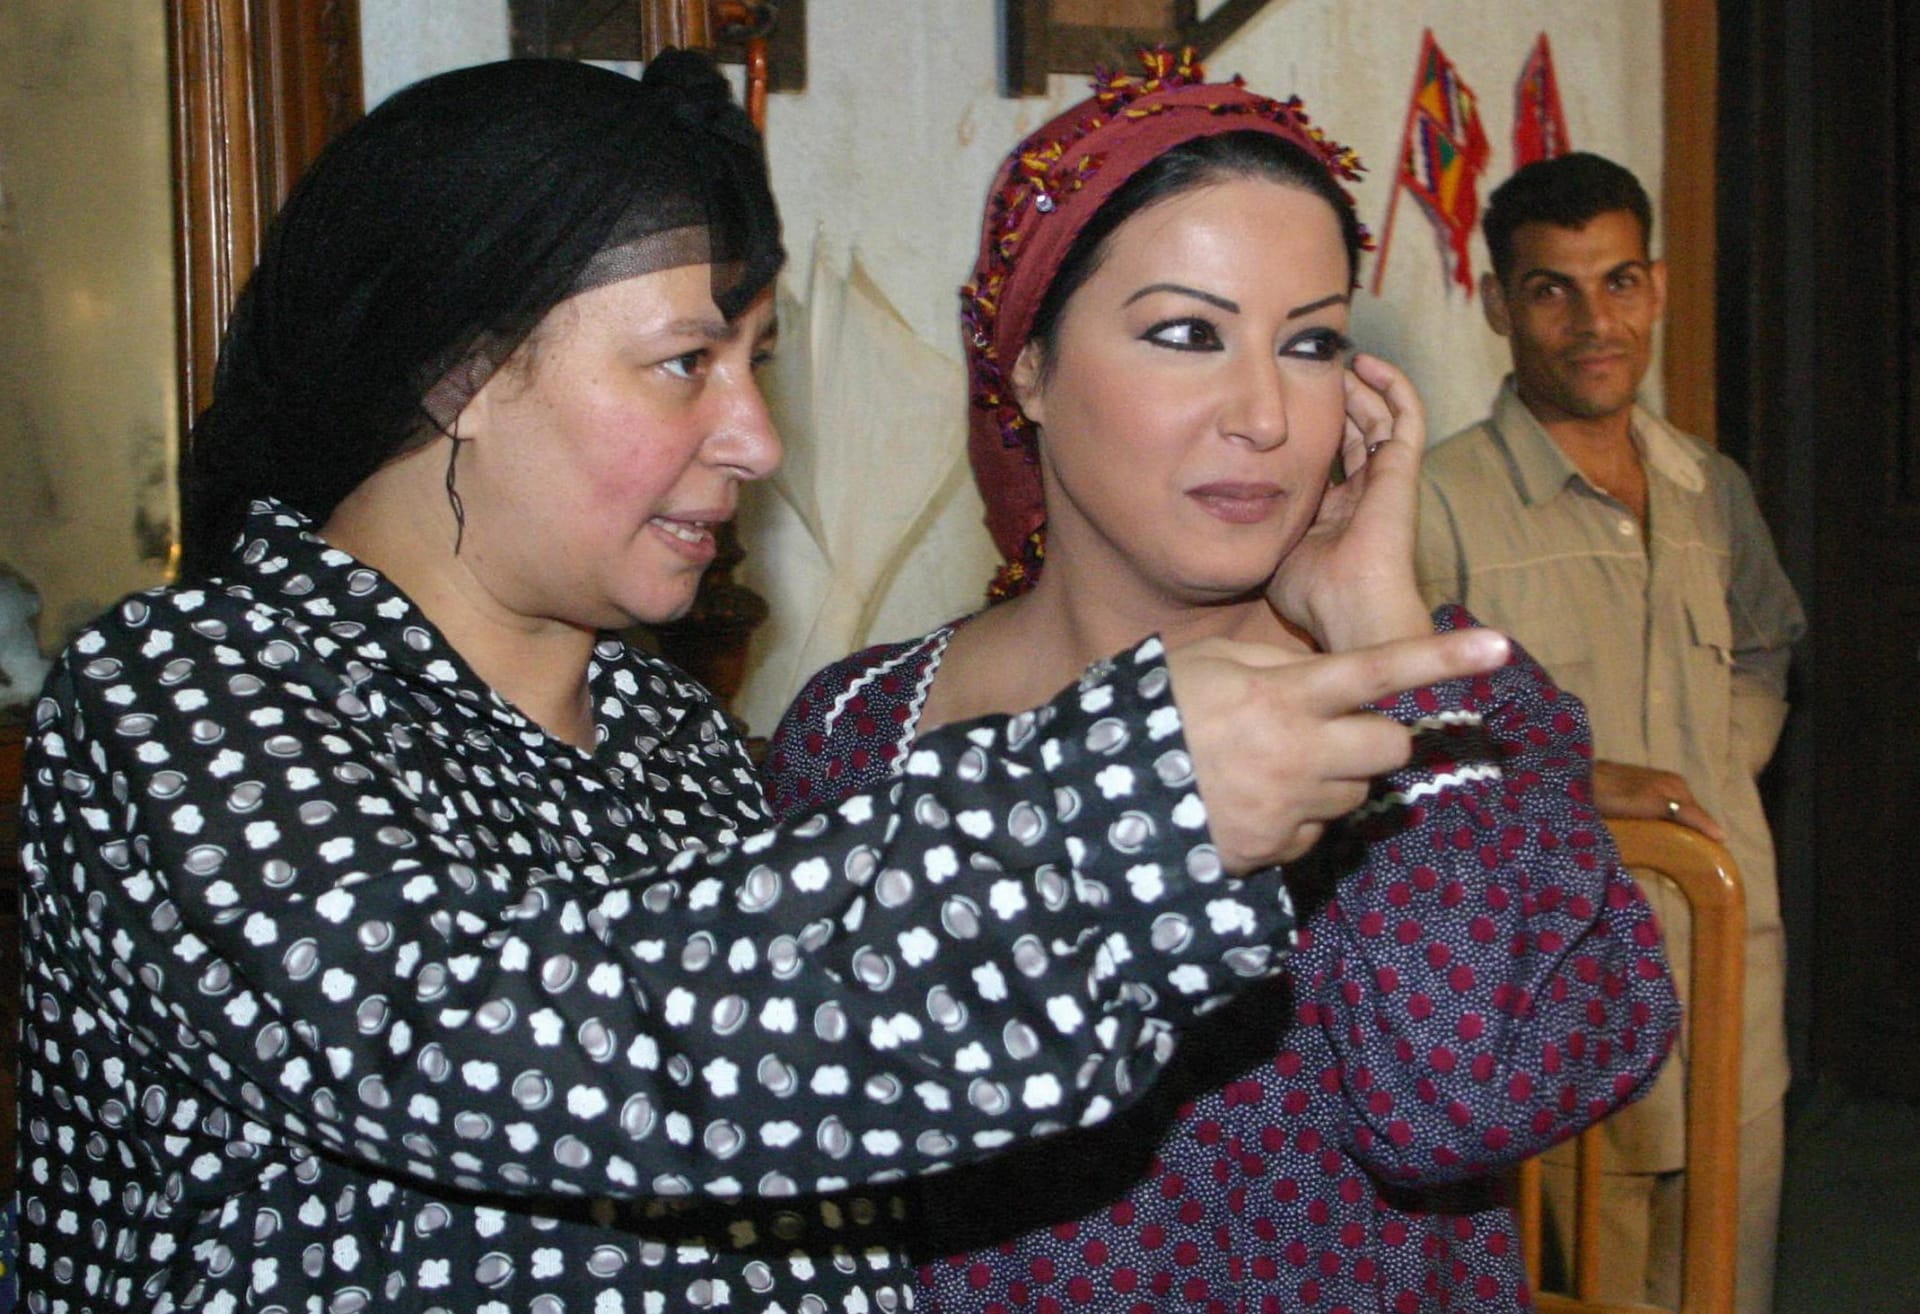 الممثلة المصرية عبلة كامل وسمية الخشاب أثناء تصوير المسلسل التلفزيوني "ريا وسكينة" بالقاهرة في 2005